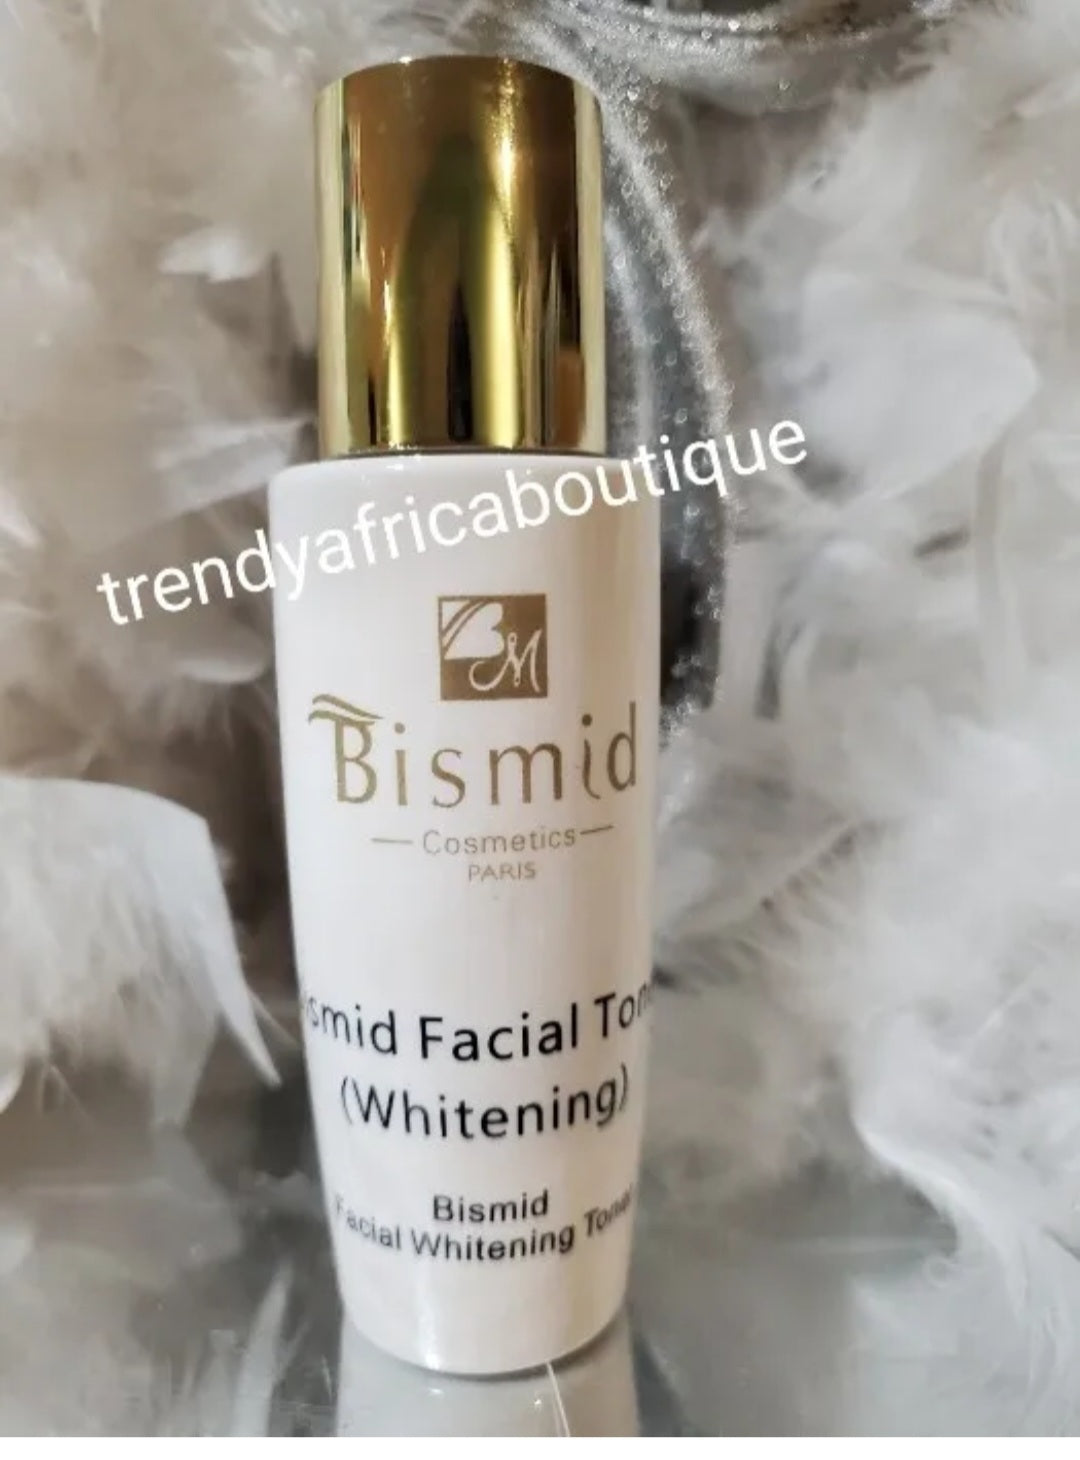 Bismid costmetics whitening face toner. Balance skin natural Ph. 100% satisfaction results. 100ml x 1 bottle